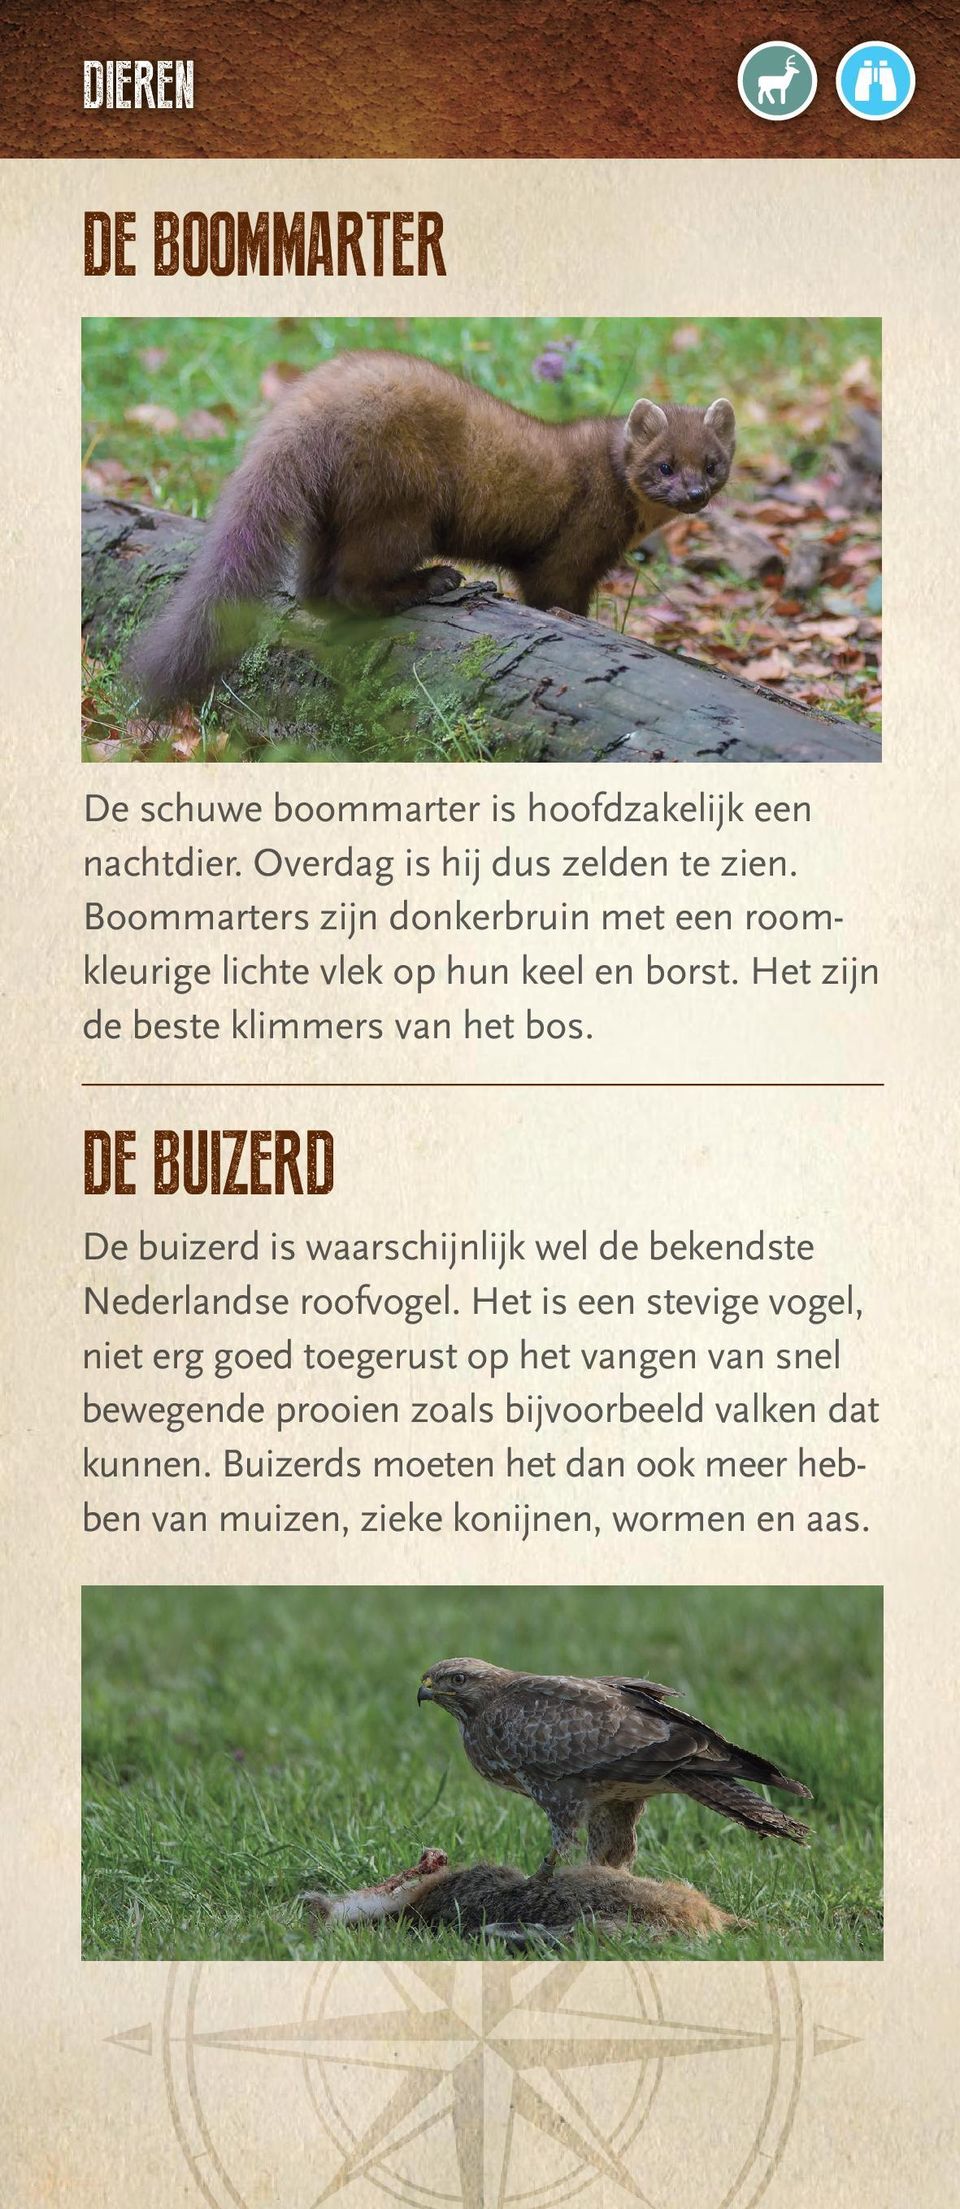 DE BUIZERD De buizerd is waarschijnlijk wel de bekendste Nederlandse roofvogel.